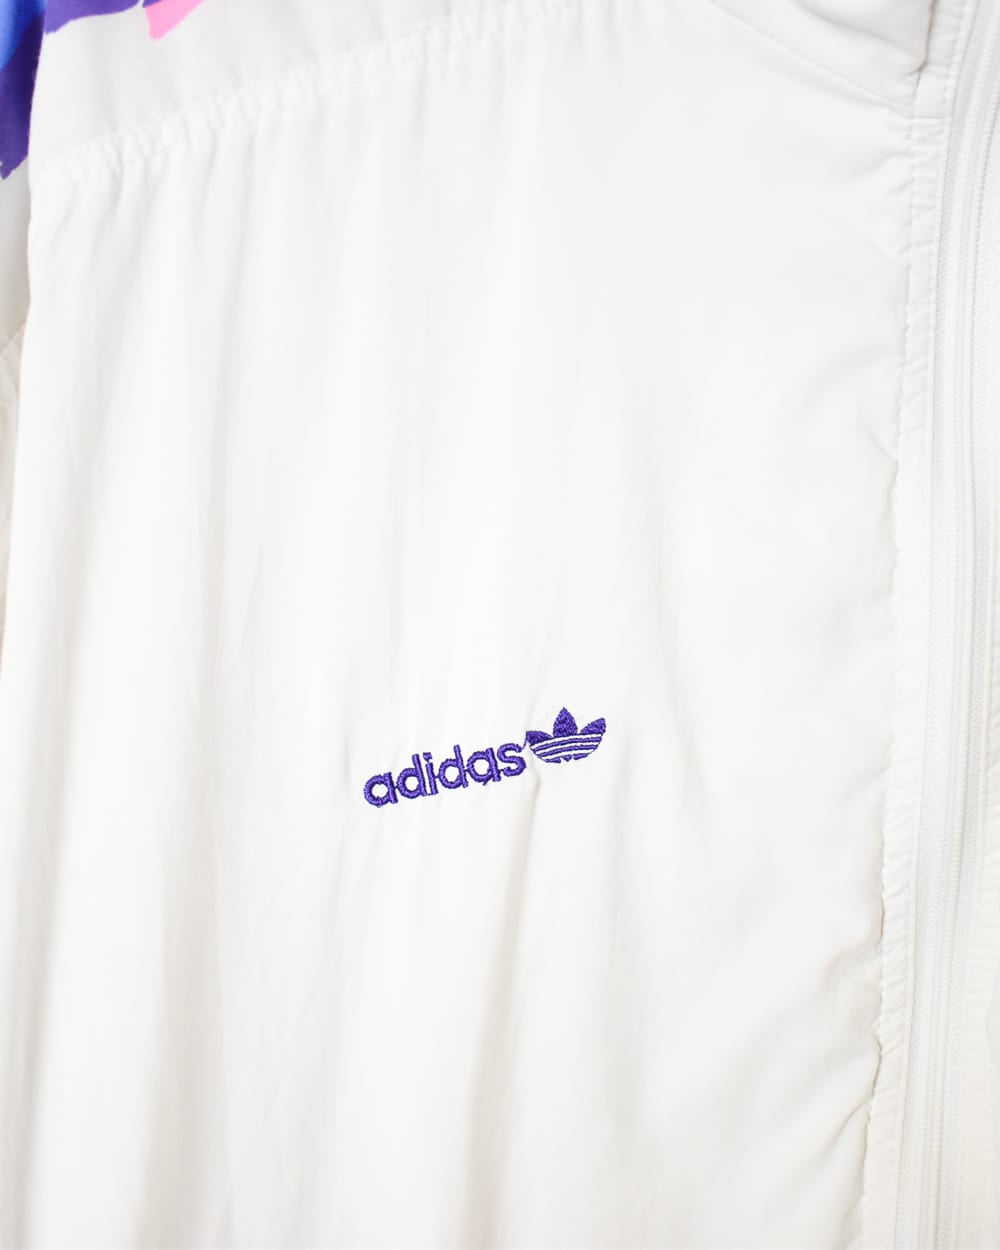 White Adidas Patterned Windbreaker Jacket - Large